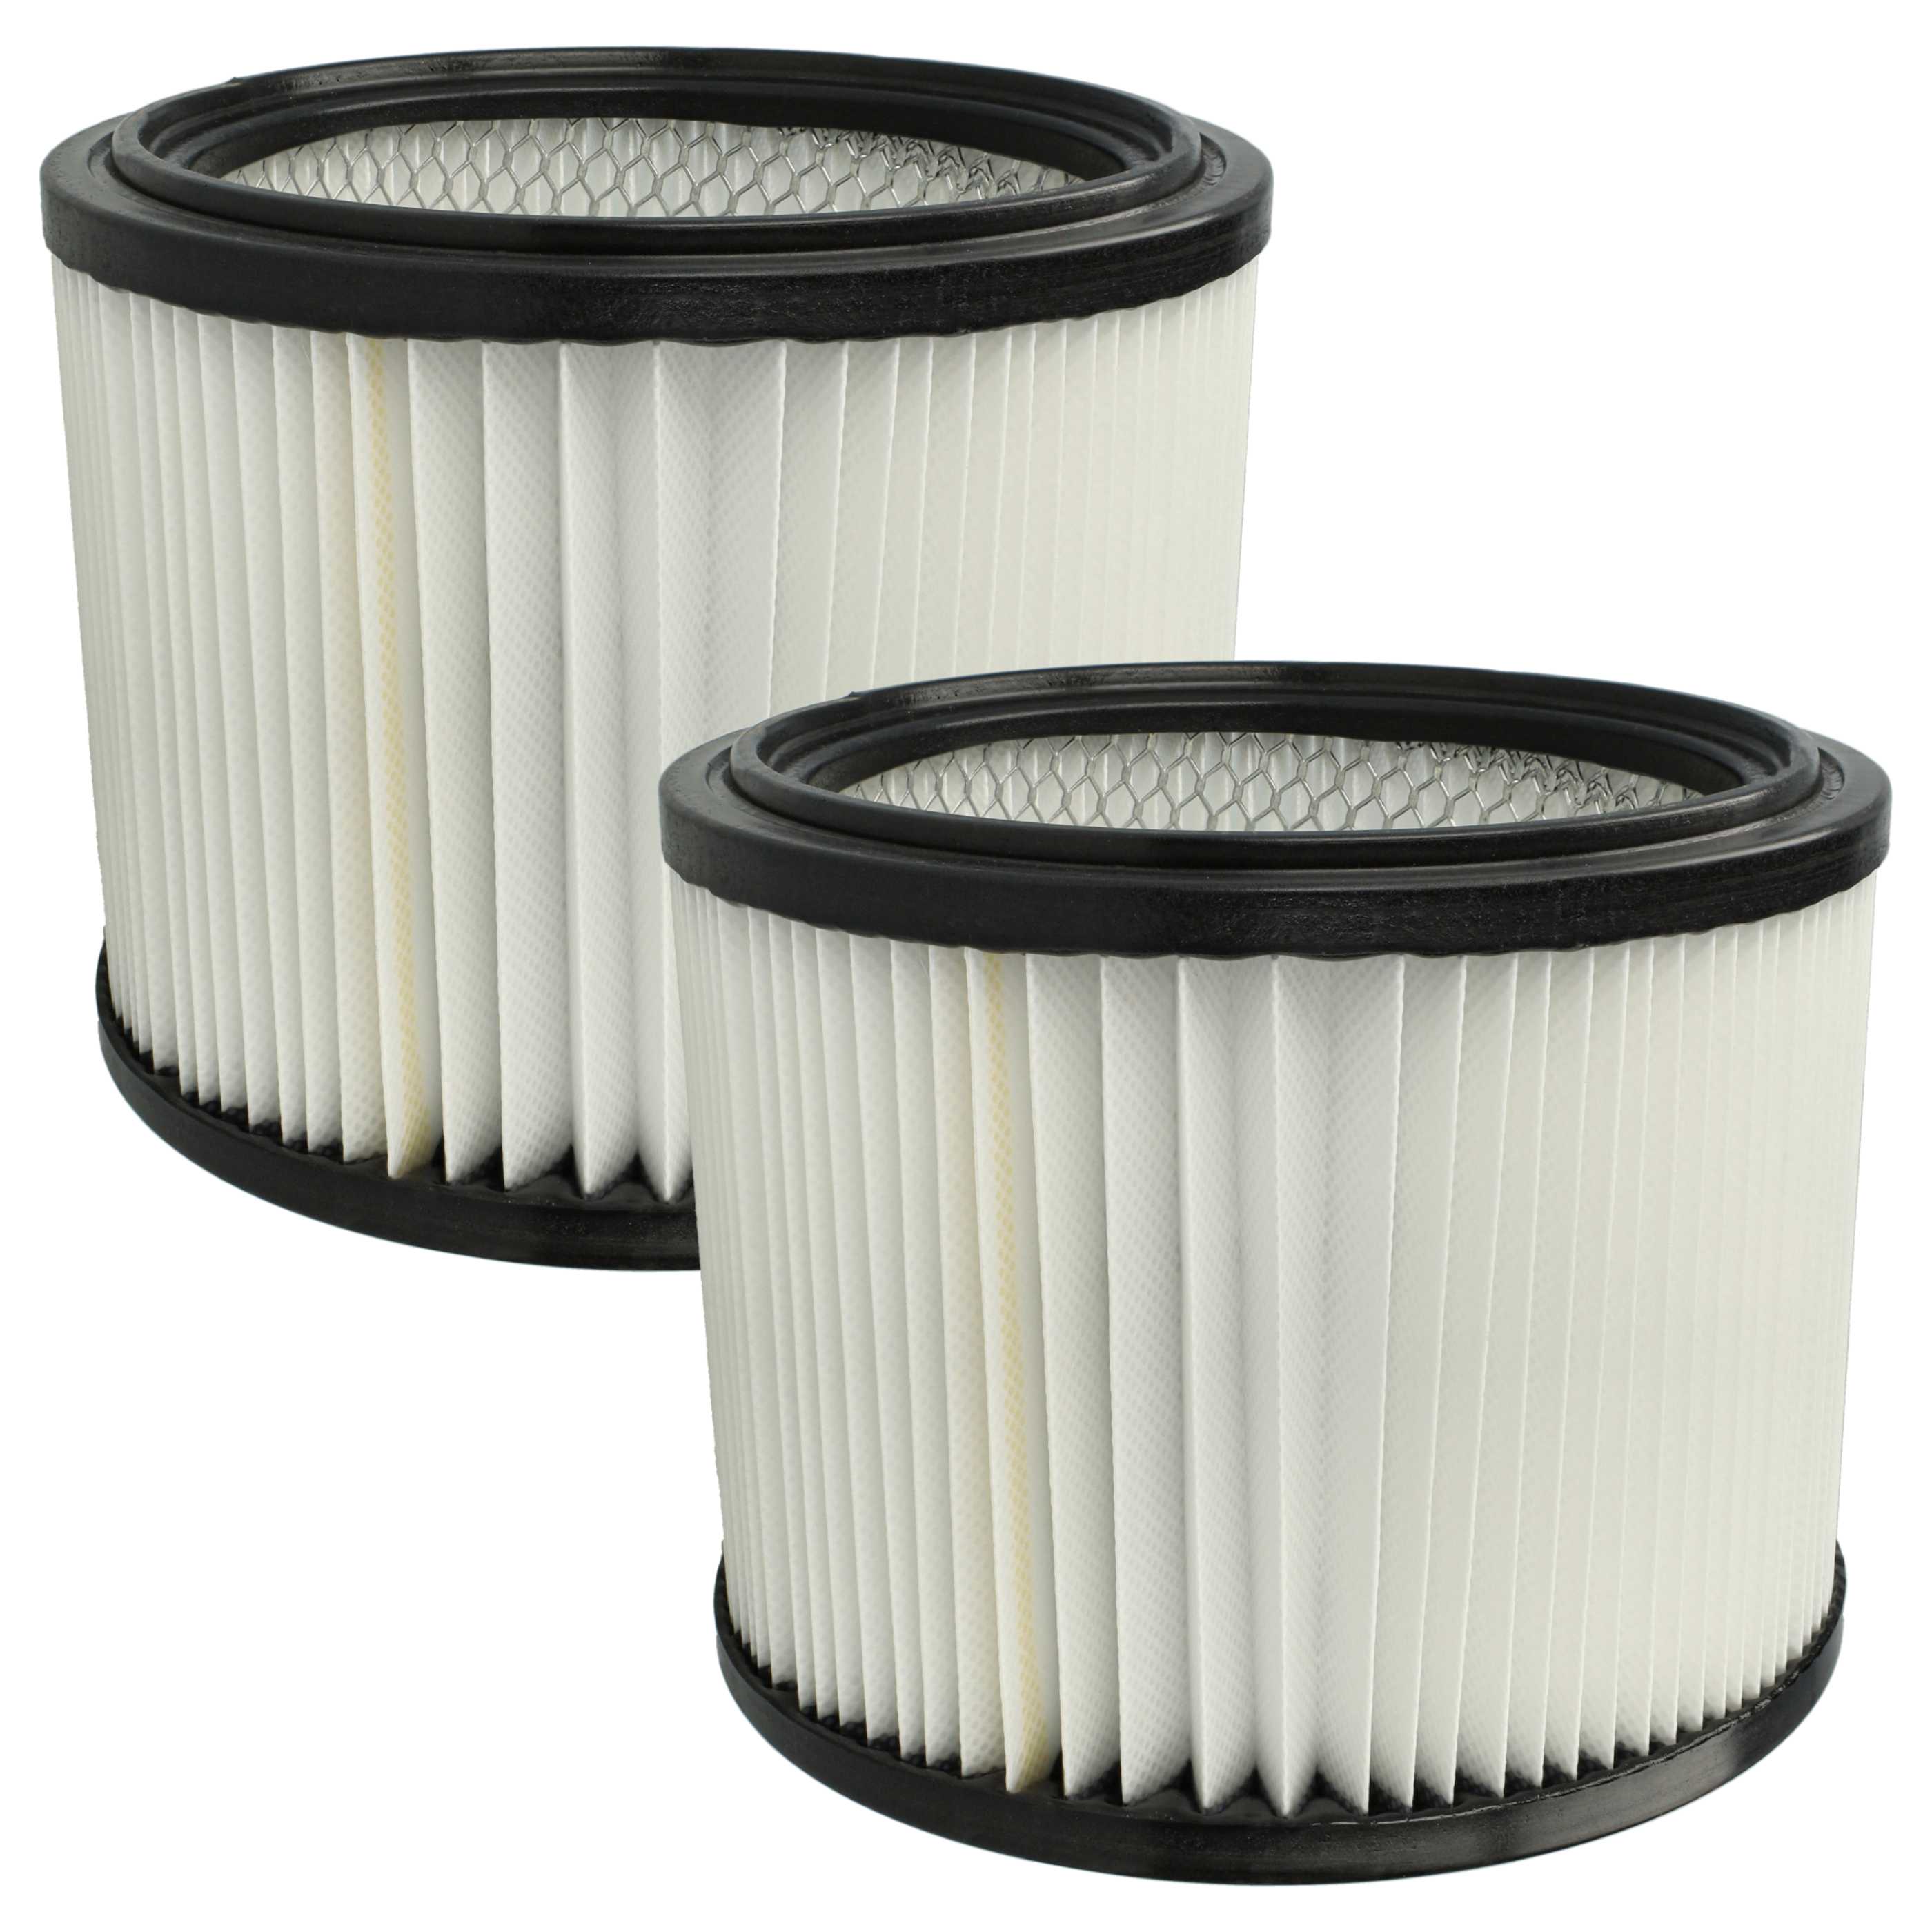 2x Filtre remplace Starmix FPP 5000 HEPA WS, 460475 pour aspirateur - filtre plissé H11